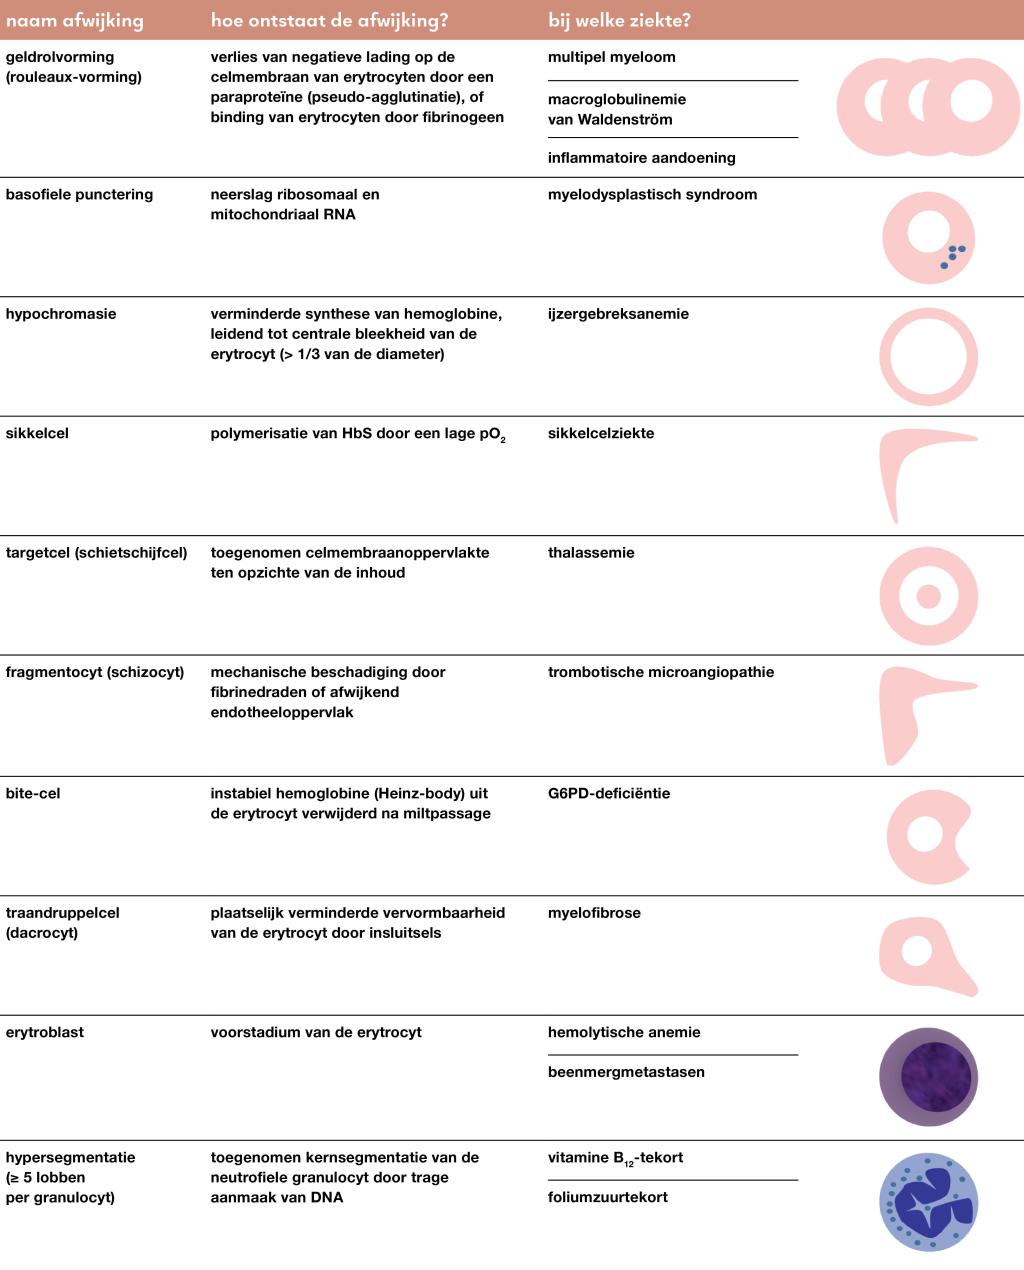 Tabel | Bevindingen bij handdifferentiatie van een bloeduitstrijk als aanwijzing voor de oorzaak van een anemie